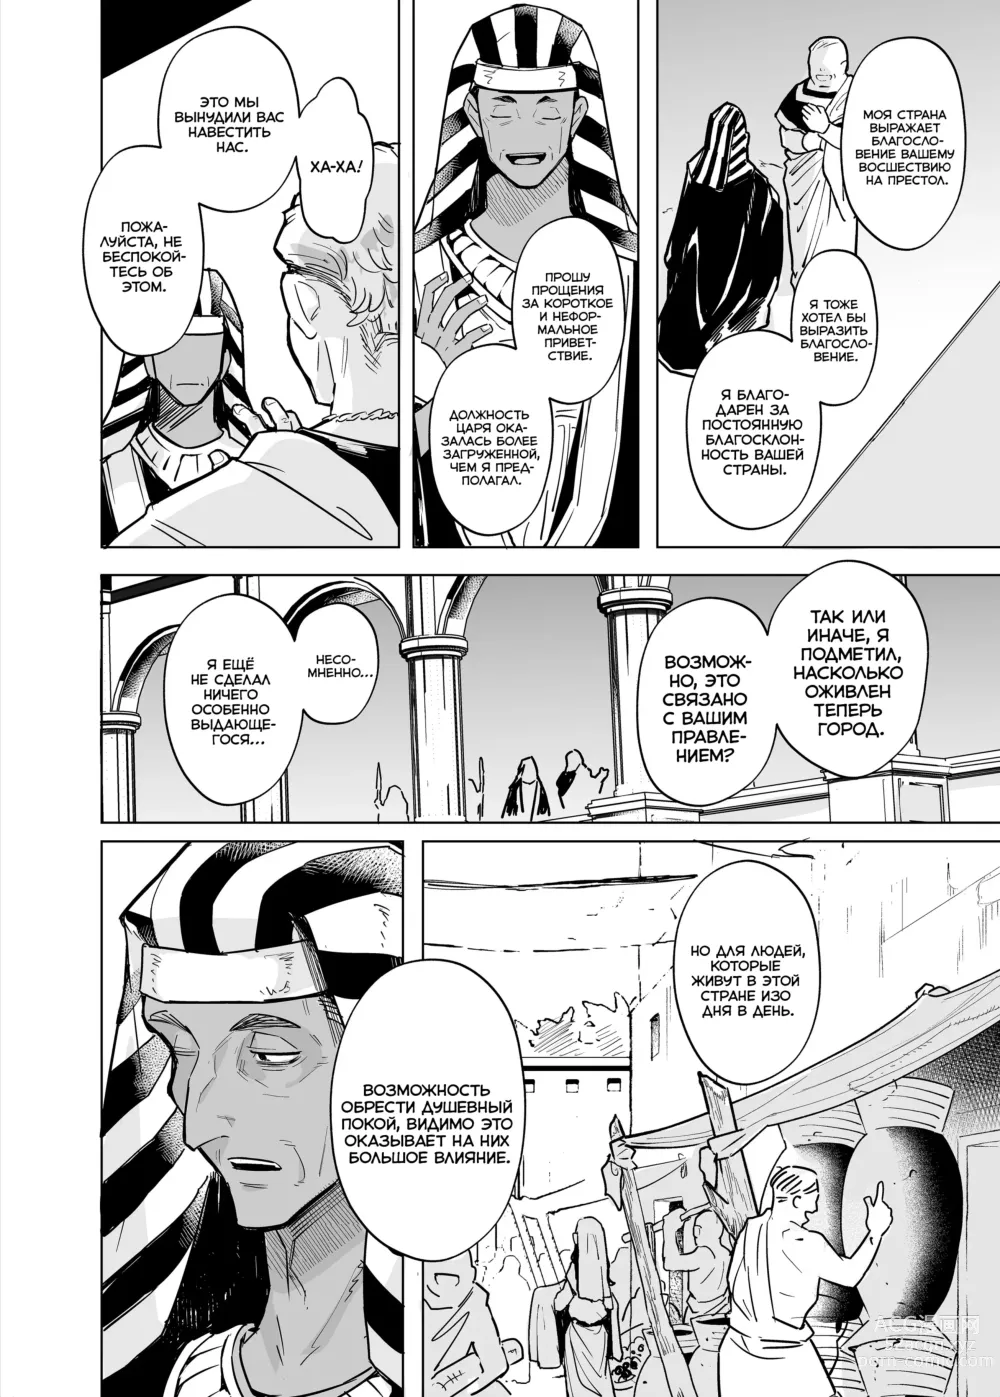 Page 68 of doujinshi Вепто-сама! Не издевайтесь над людьми!